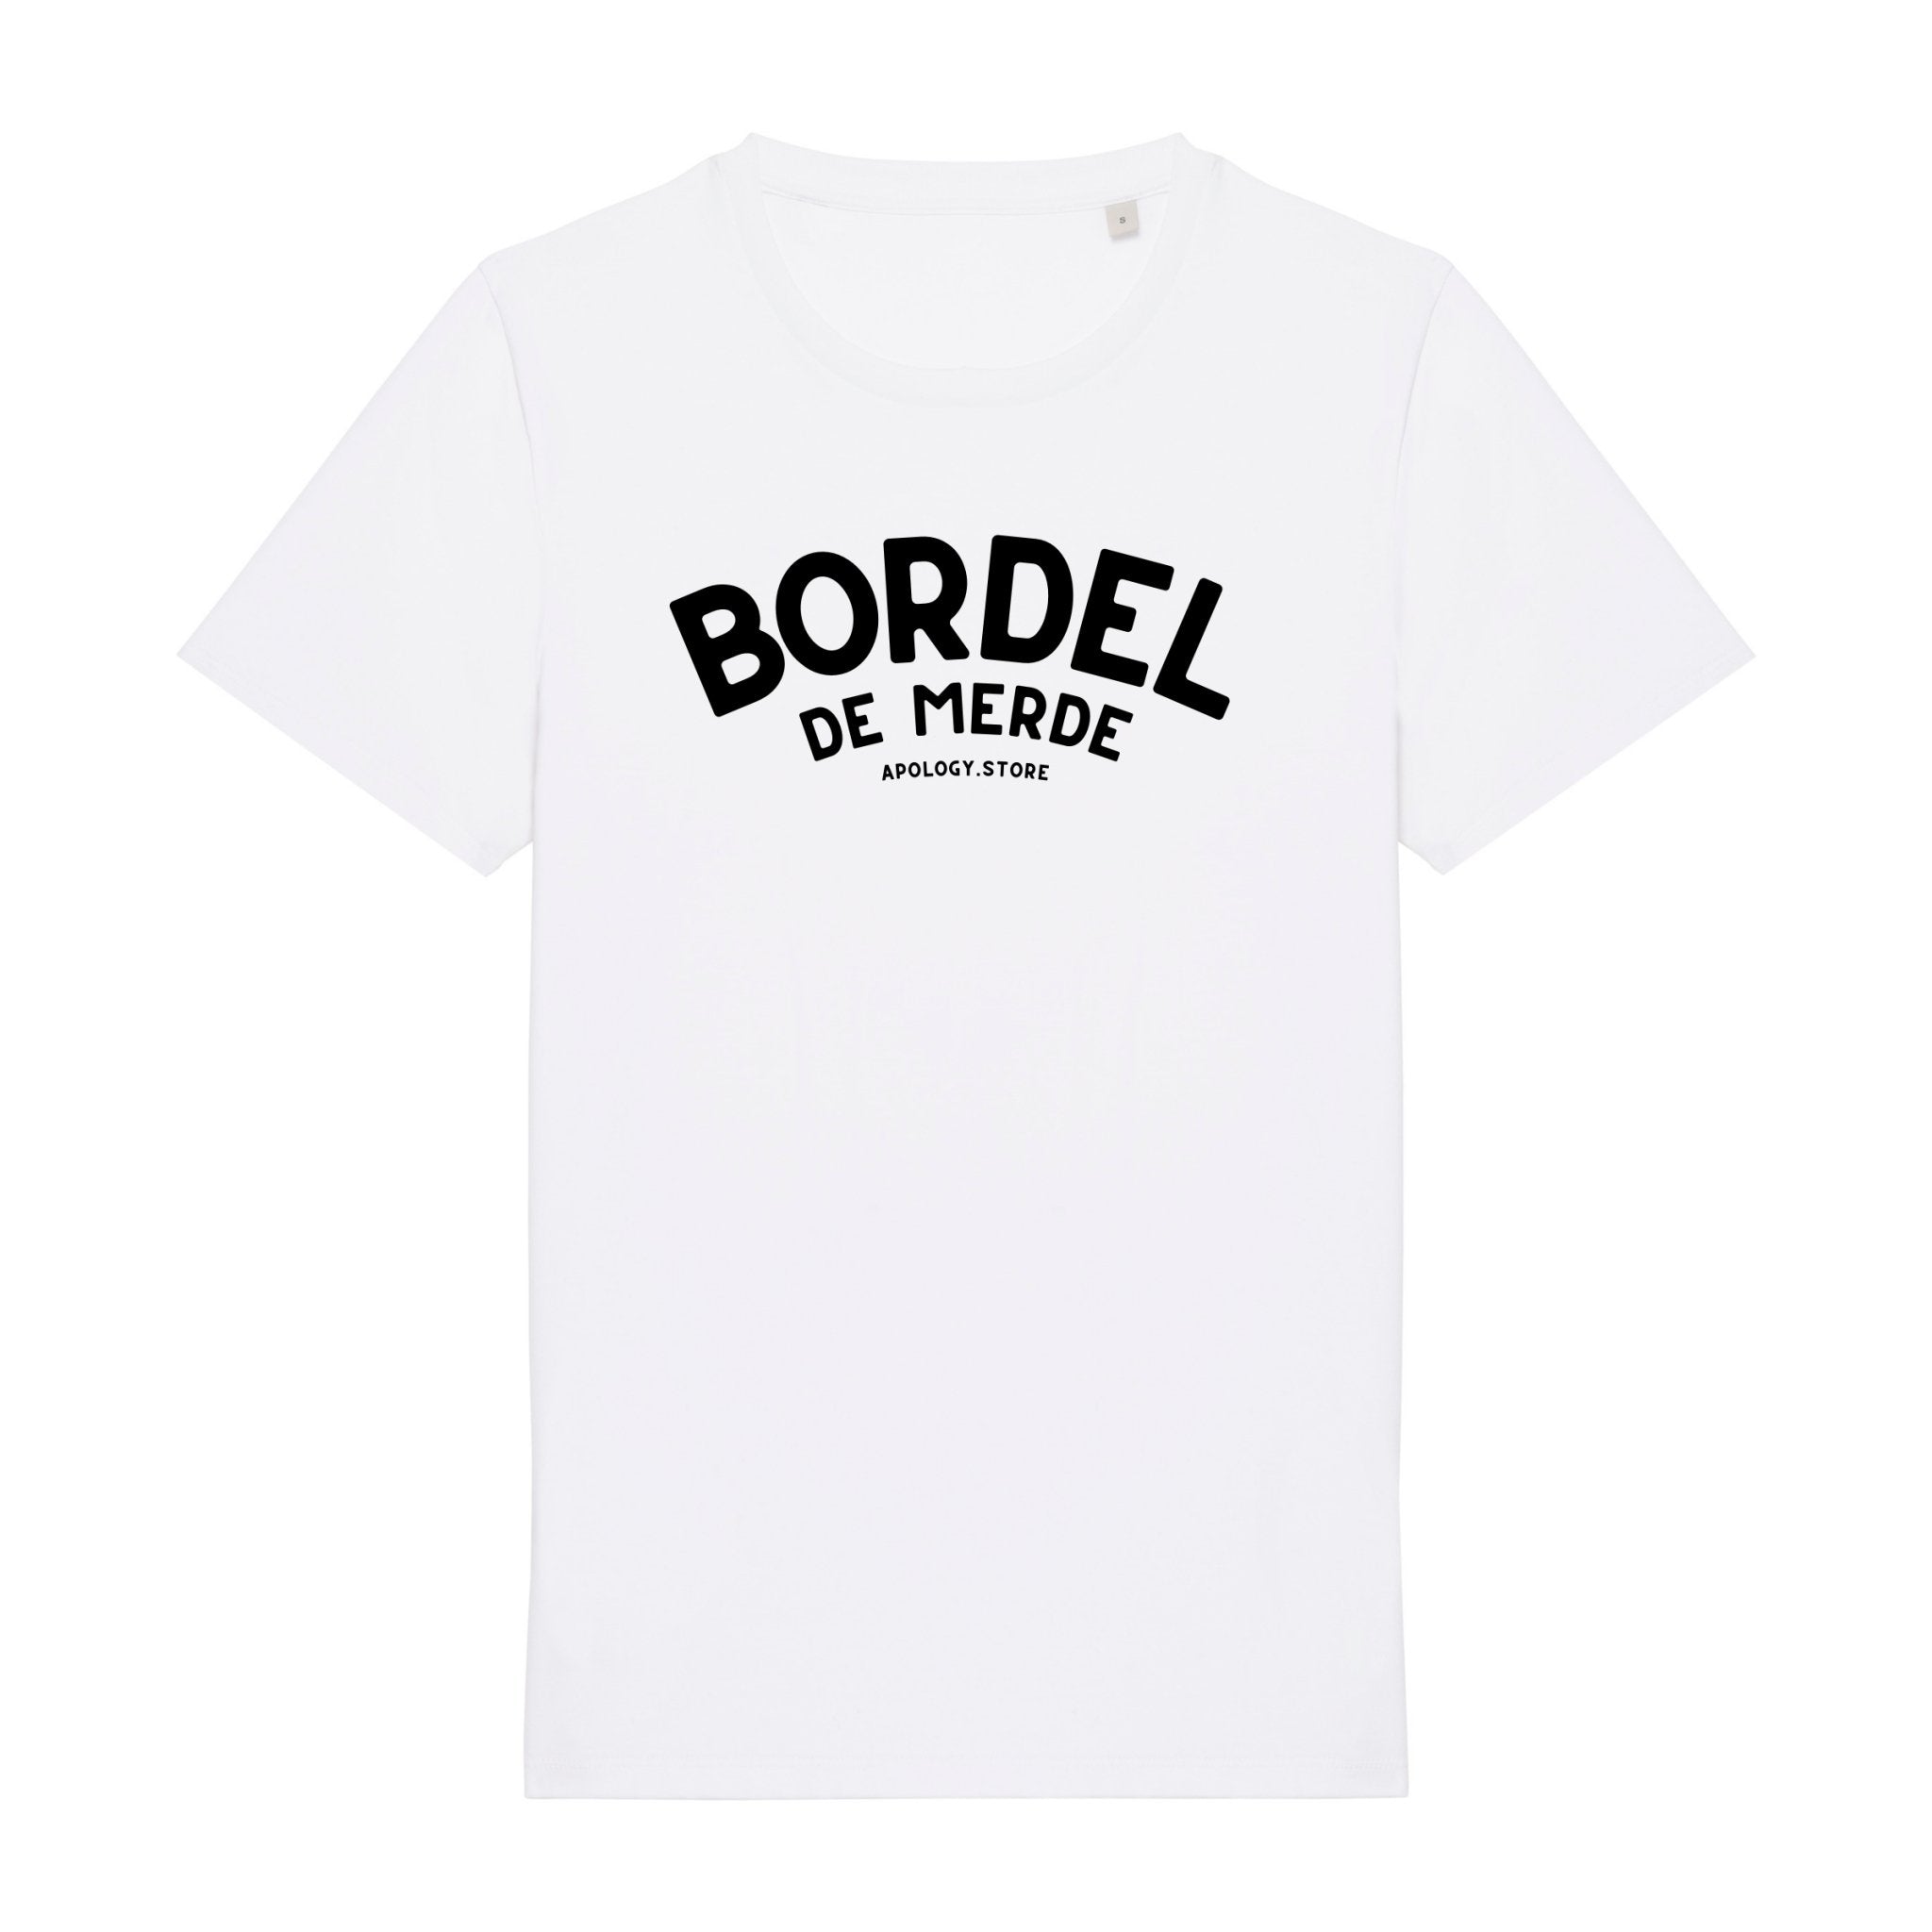 T-shirt Bordel De Merde - Fabriqué au Portugal XS Blanc - Imprimé en France